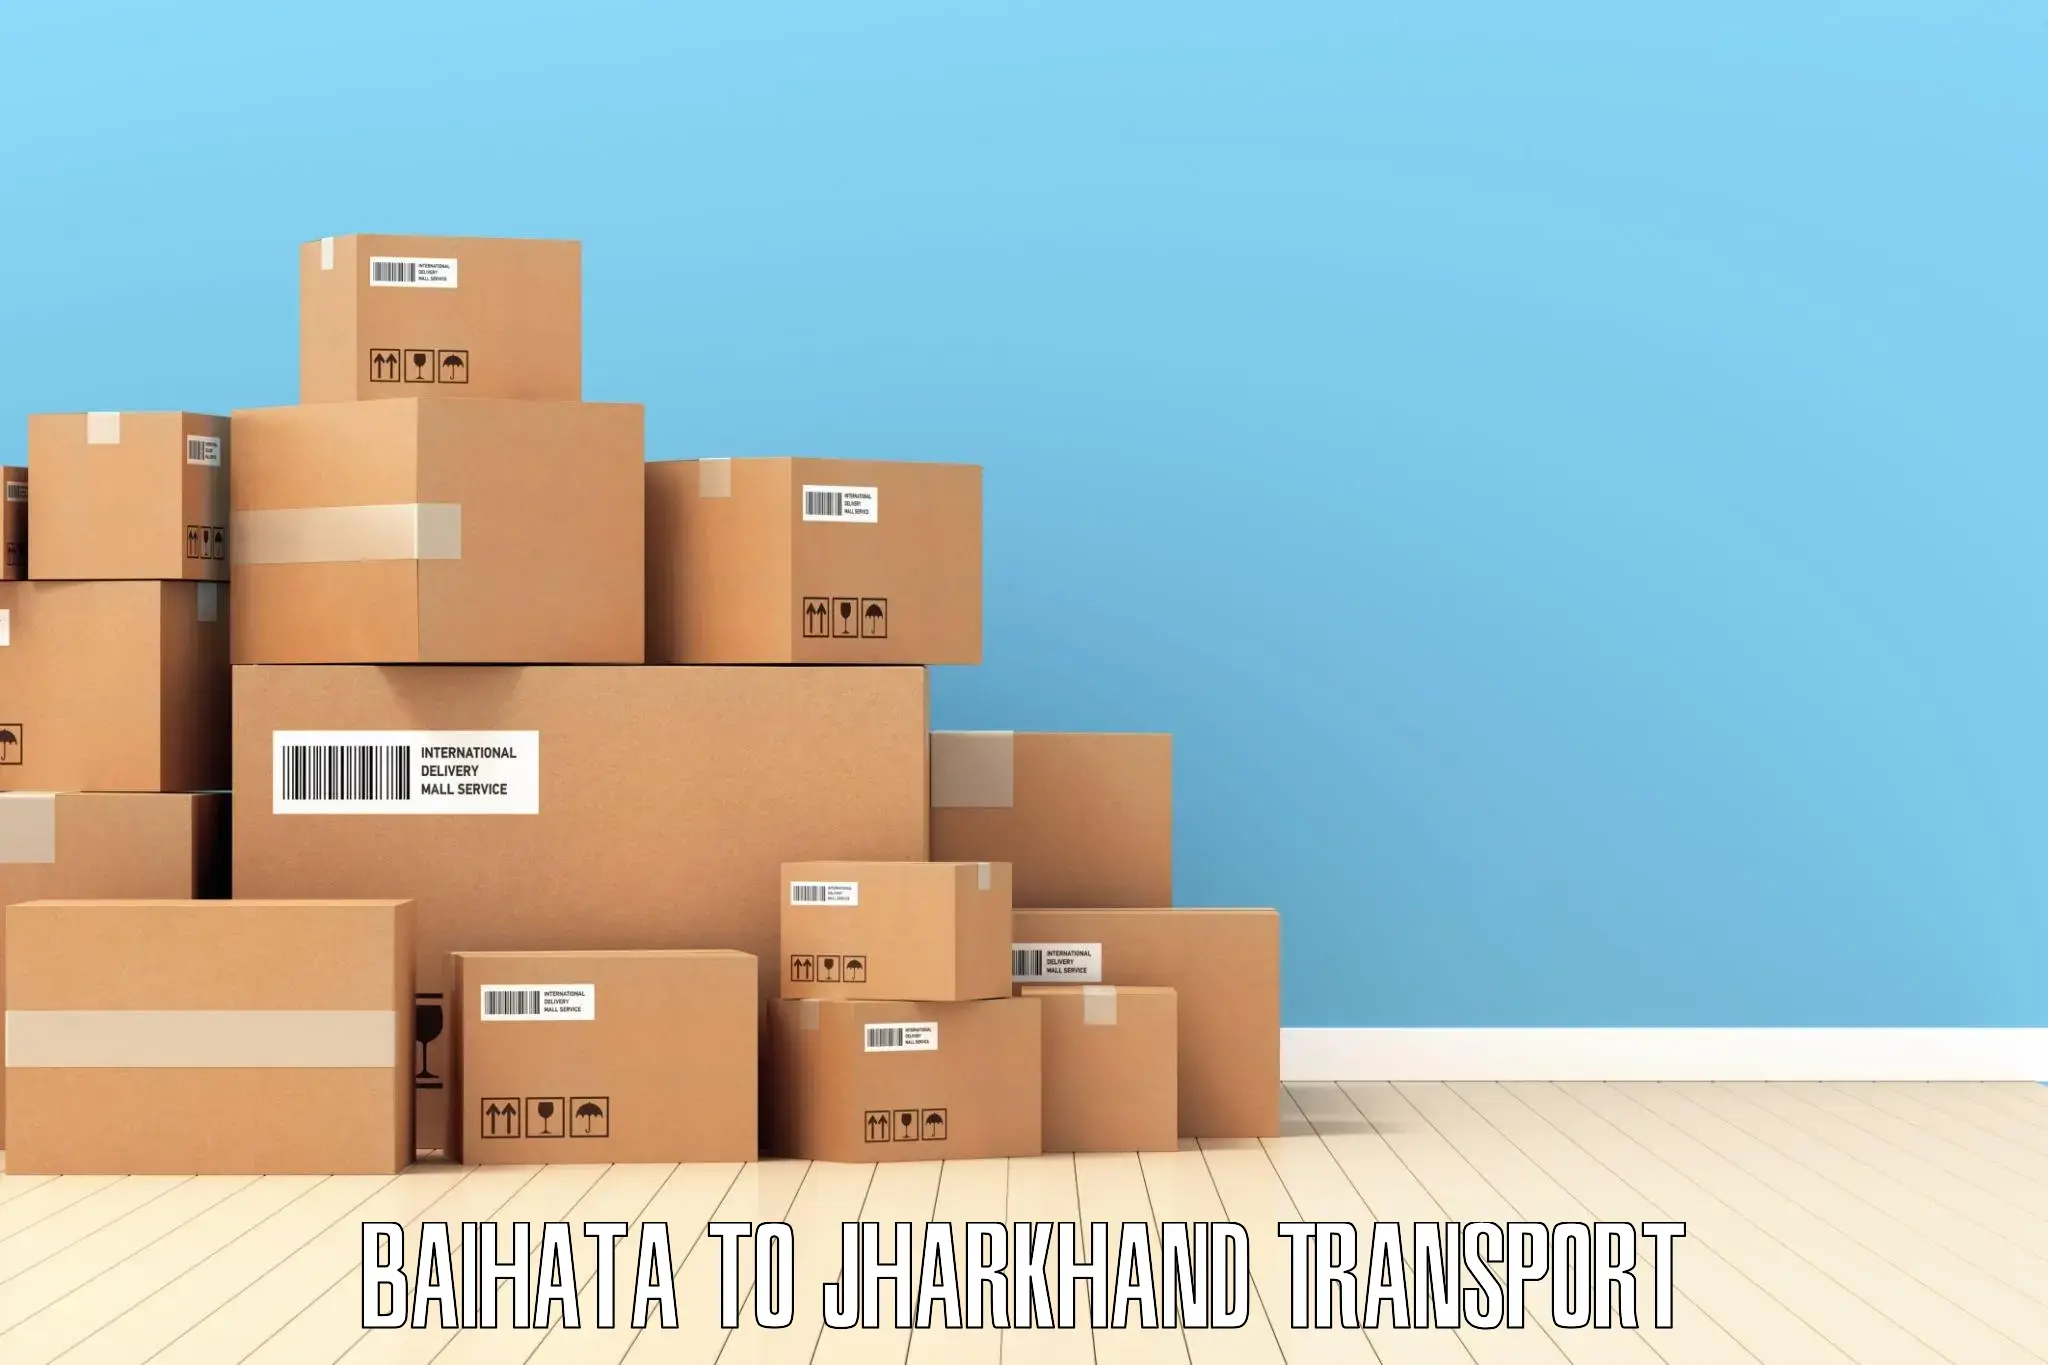 Transport in sharing Baihata to Nirsa